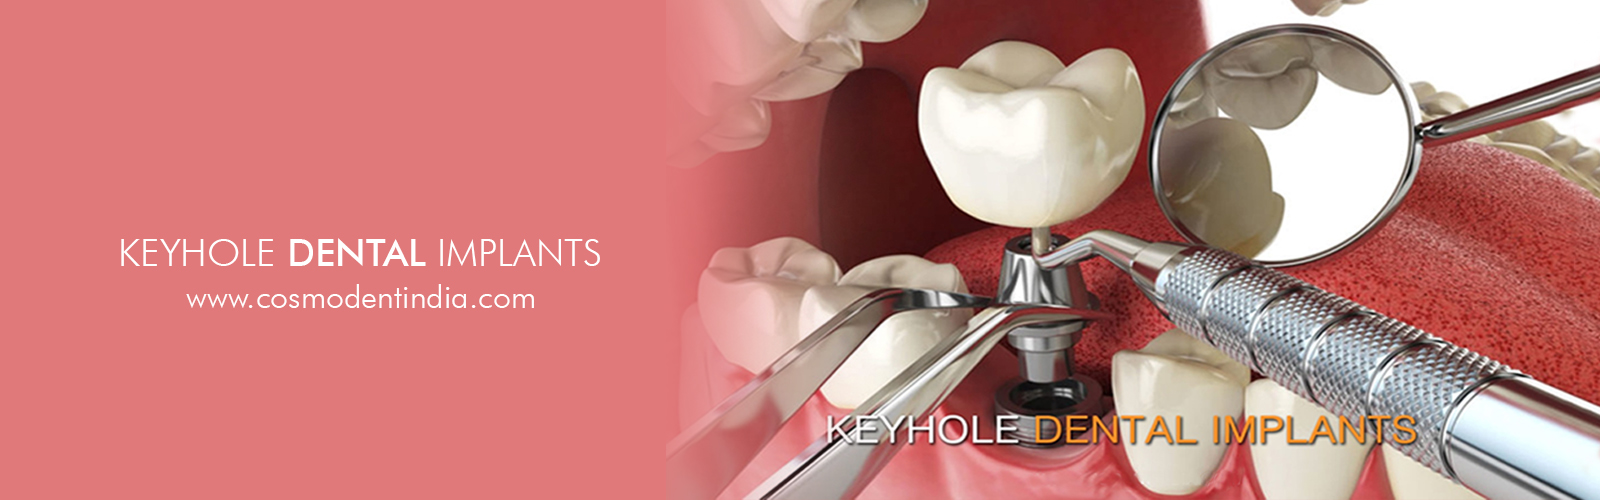 key-hole-dental-implants